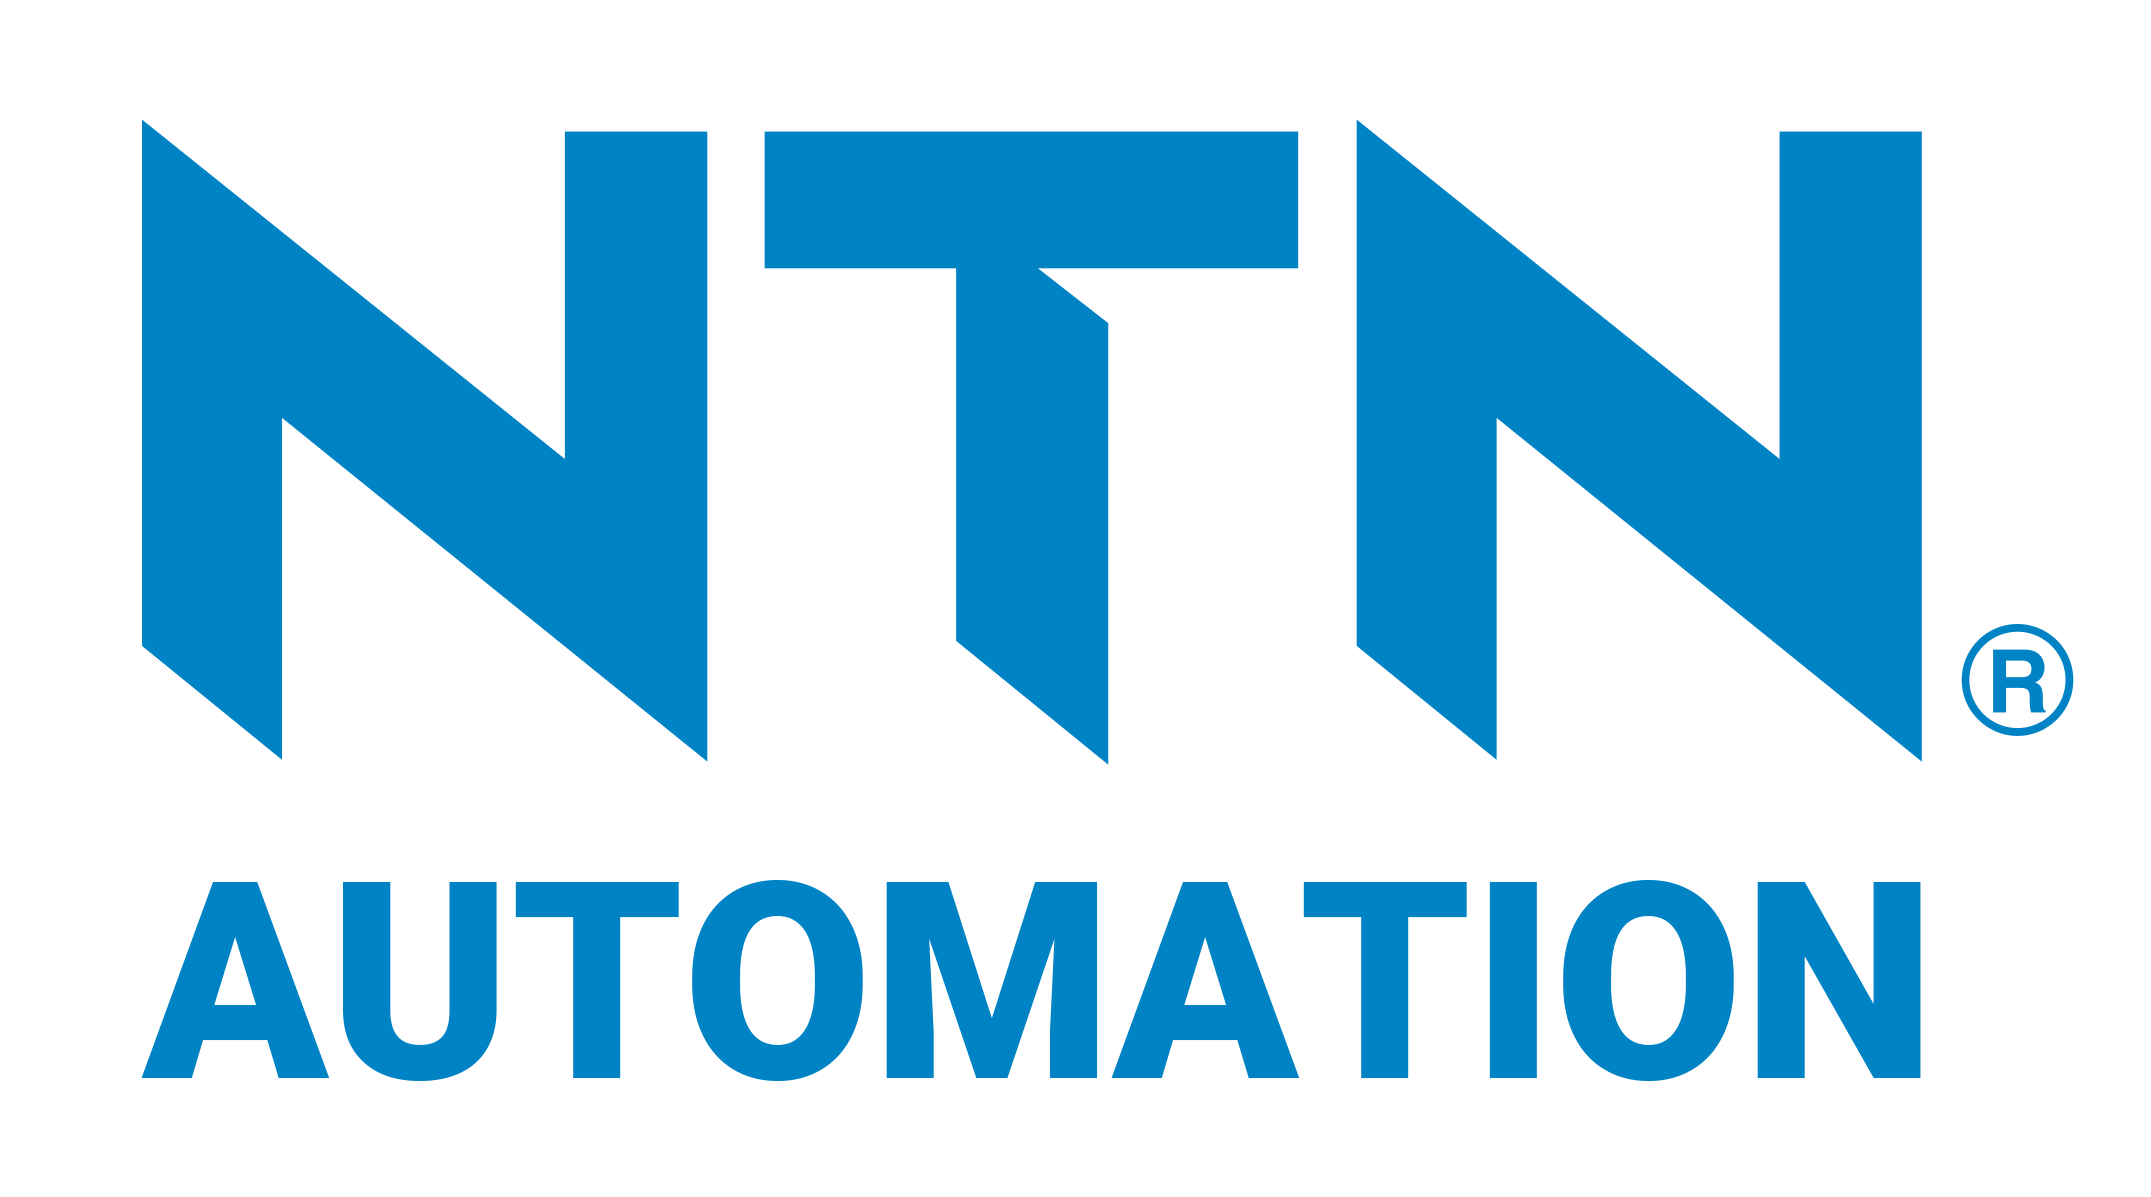 The NTN Automation Company logo.